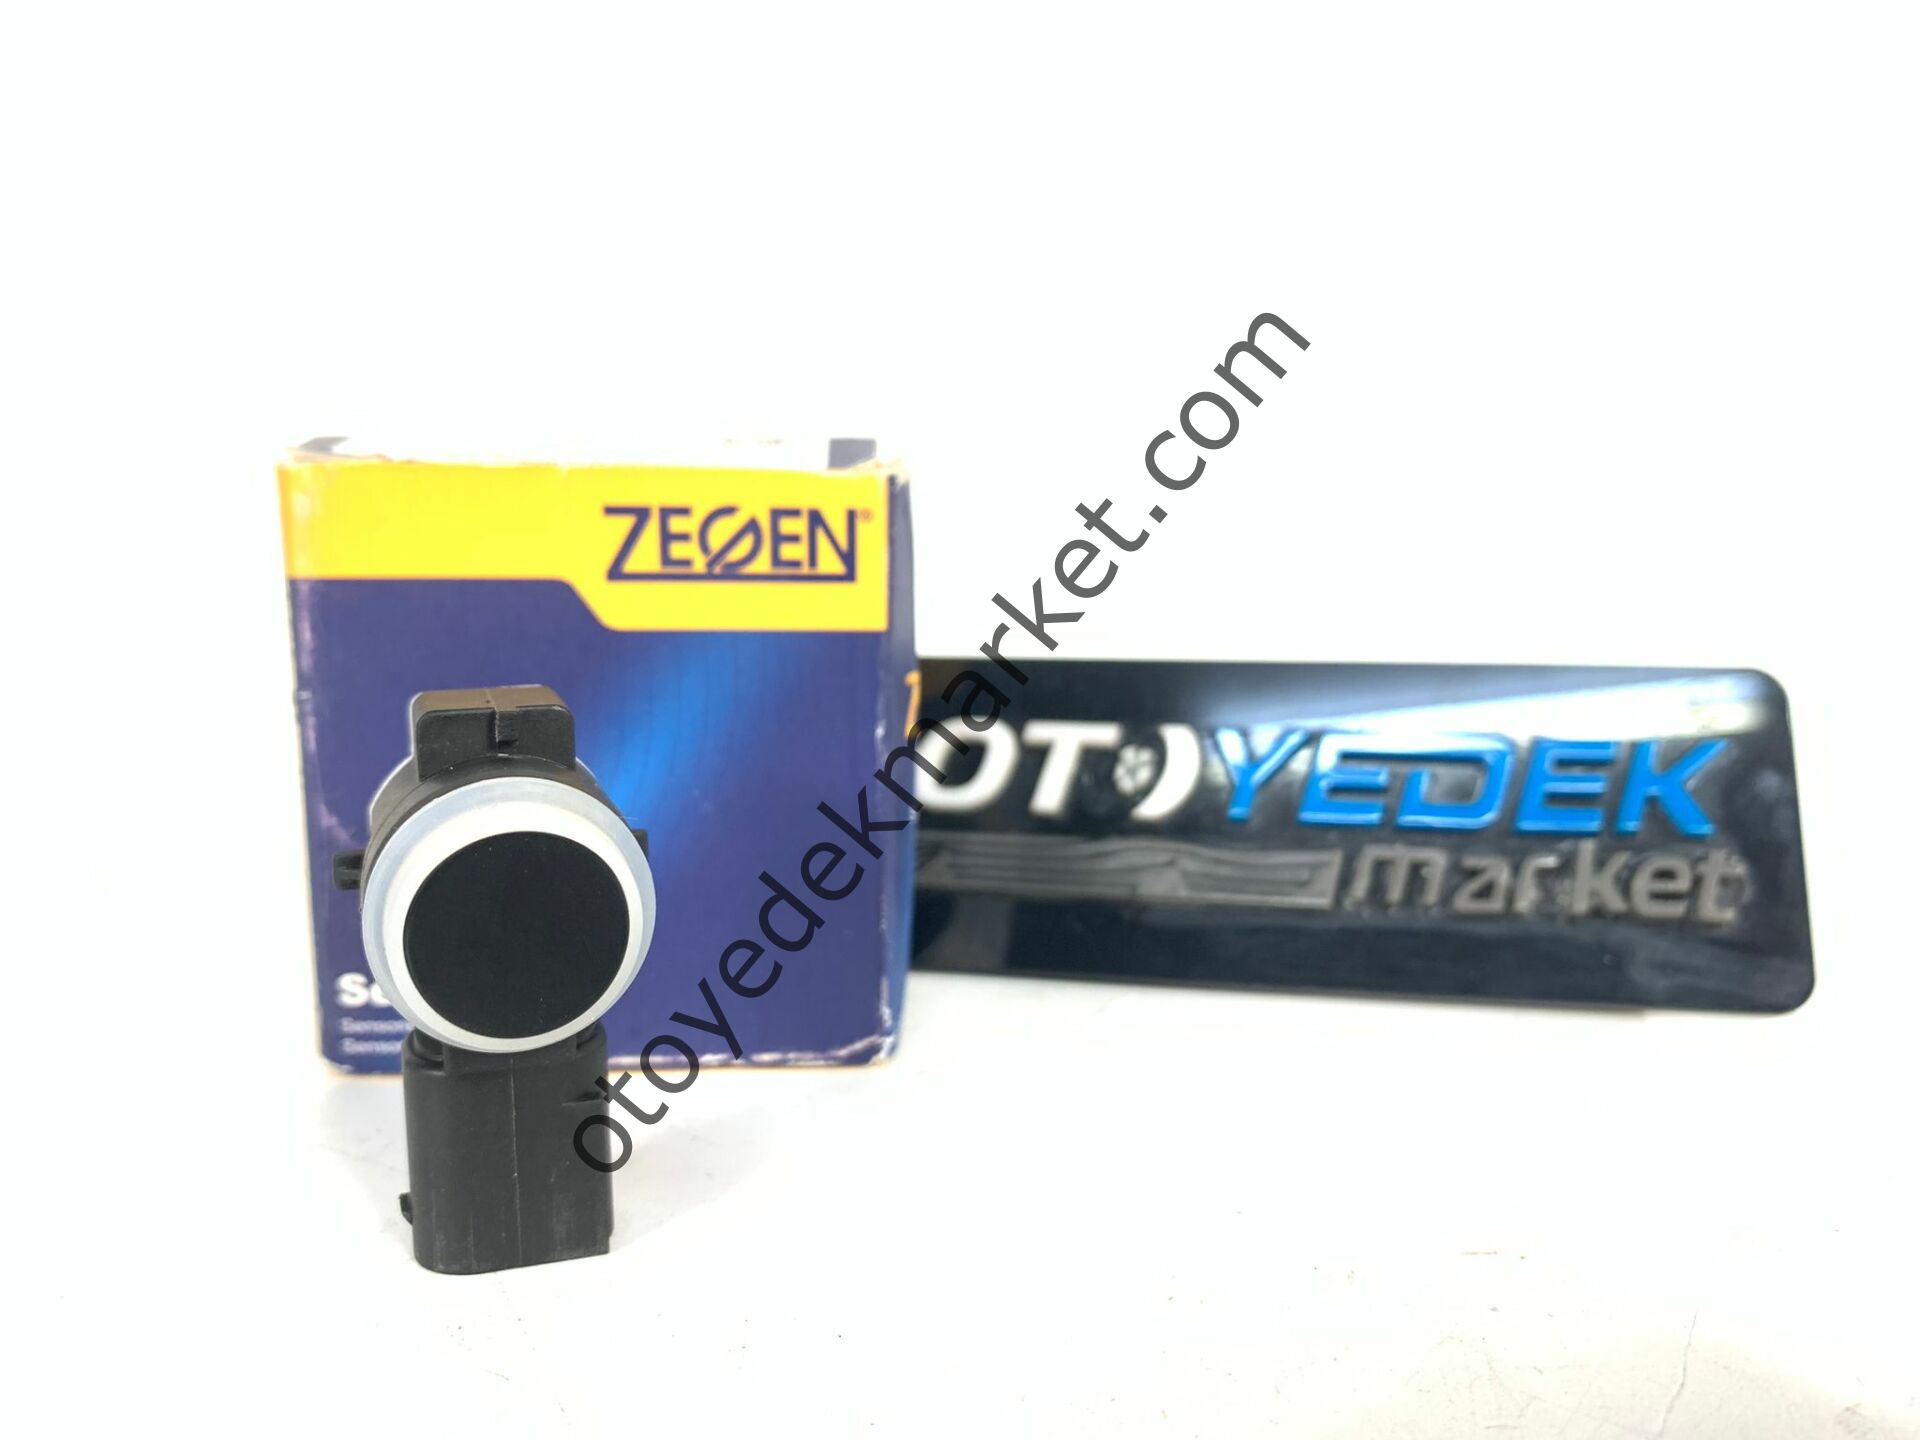 Citroen C4 (2011-2017) Park Sensörü (Zegen)